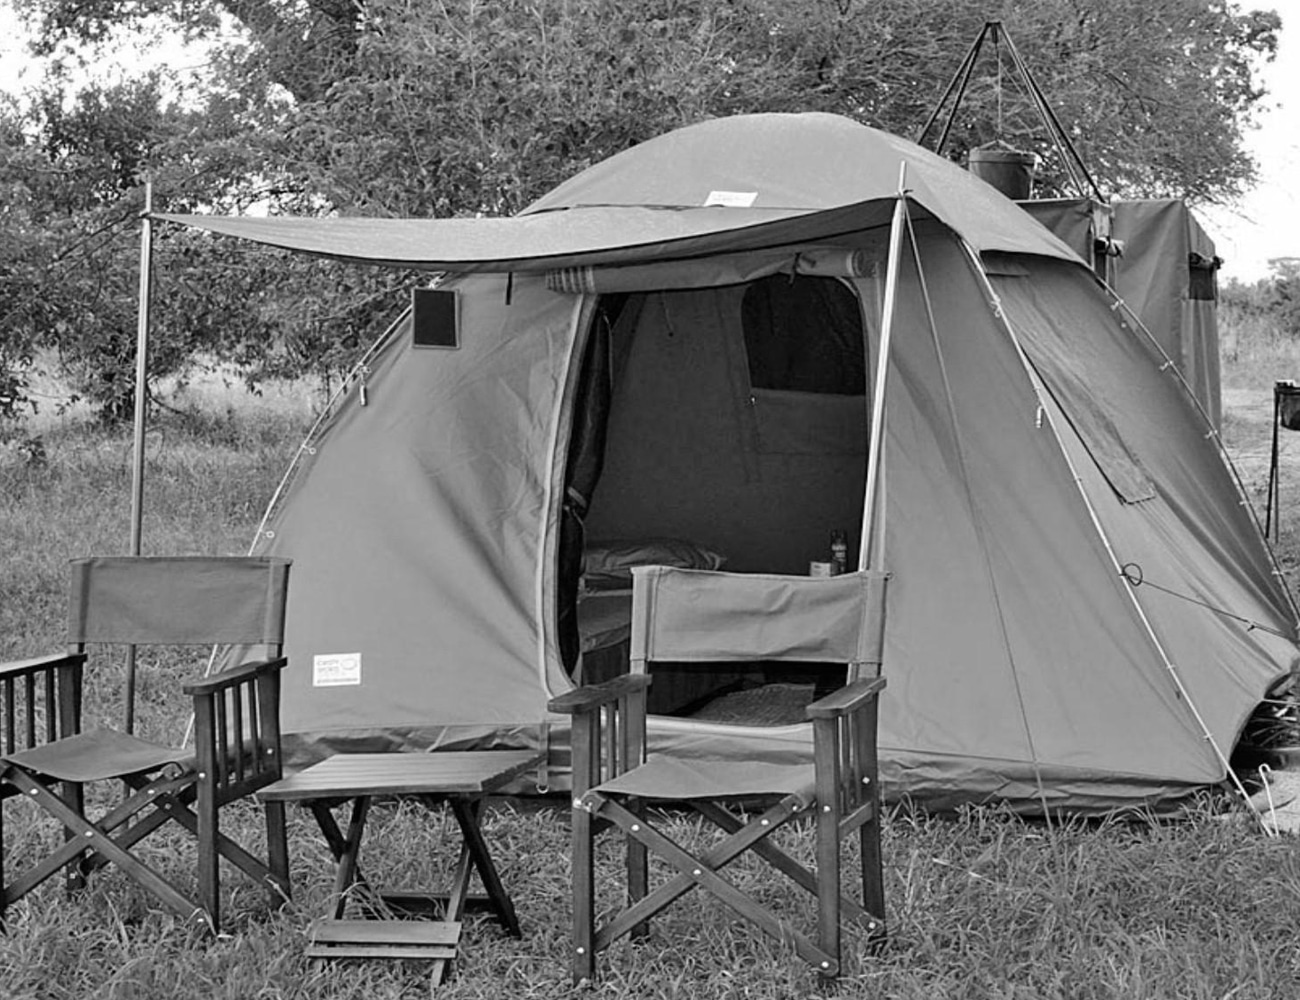 Camping Tents in Tanzania Safari